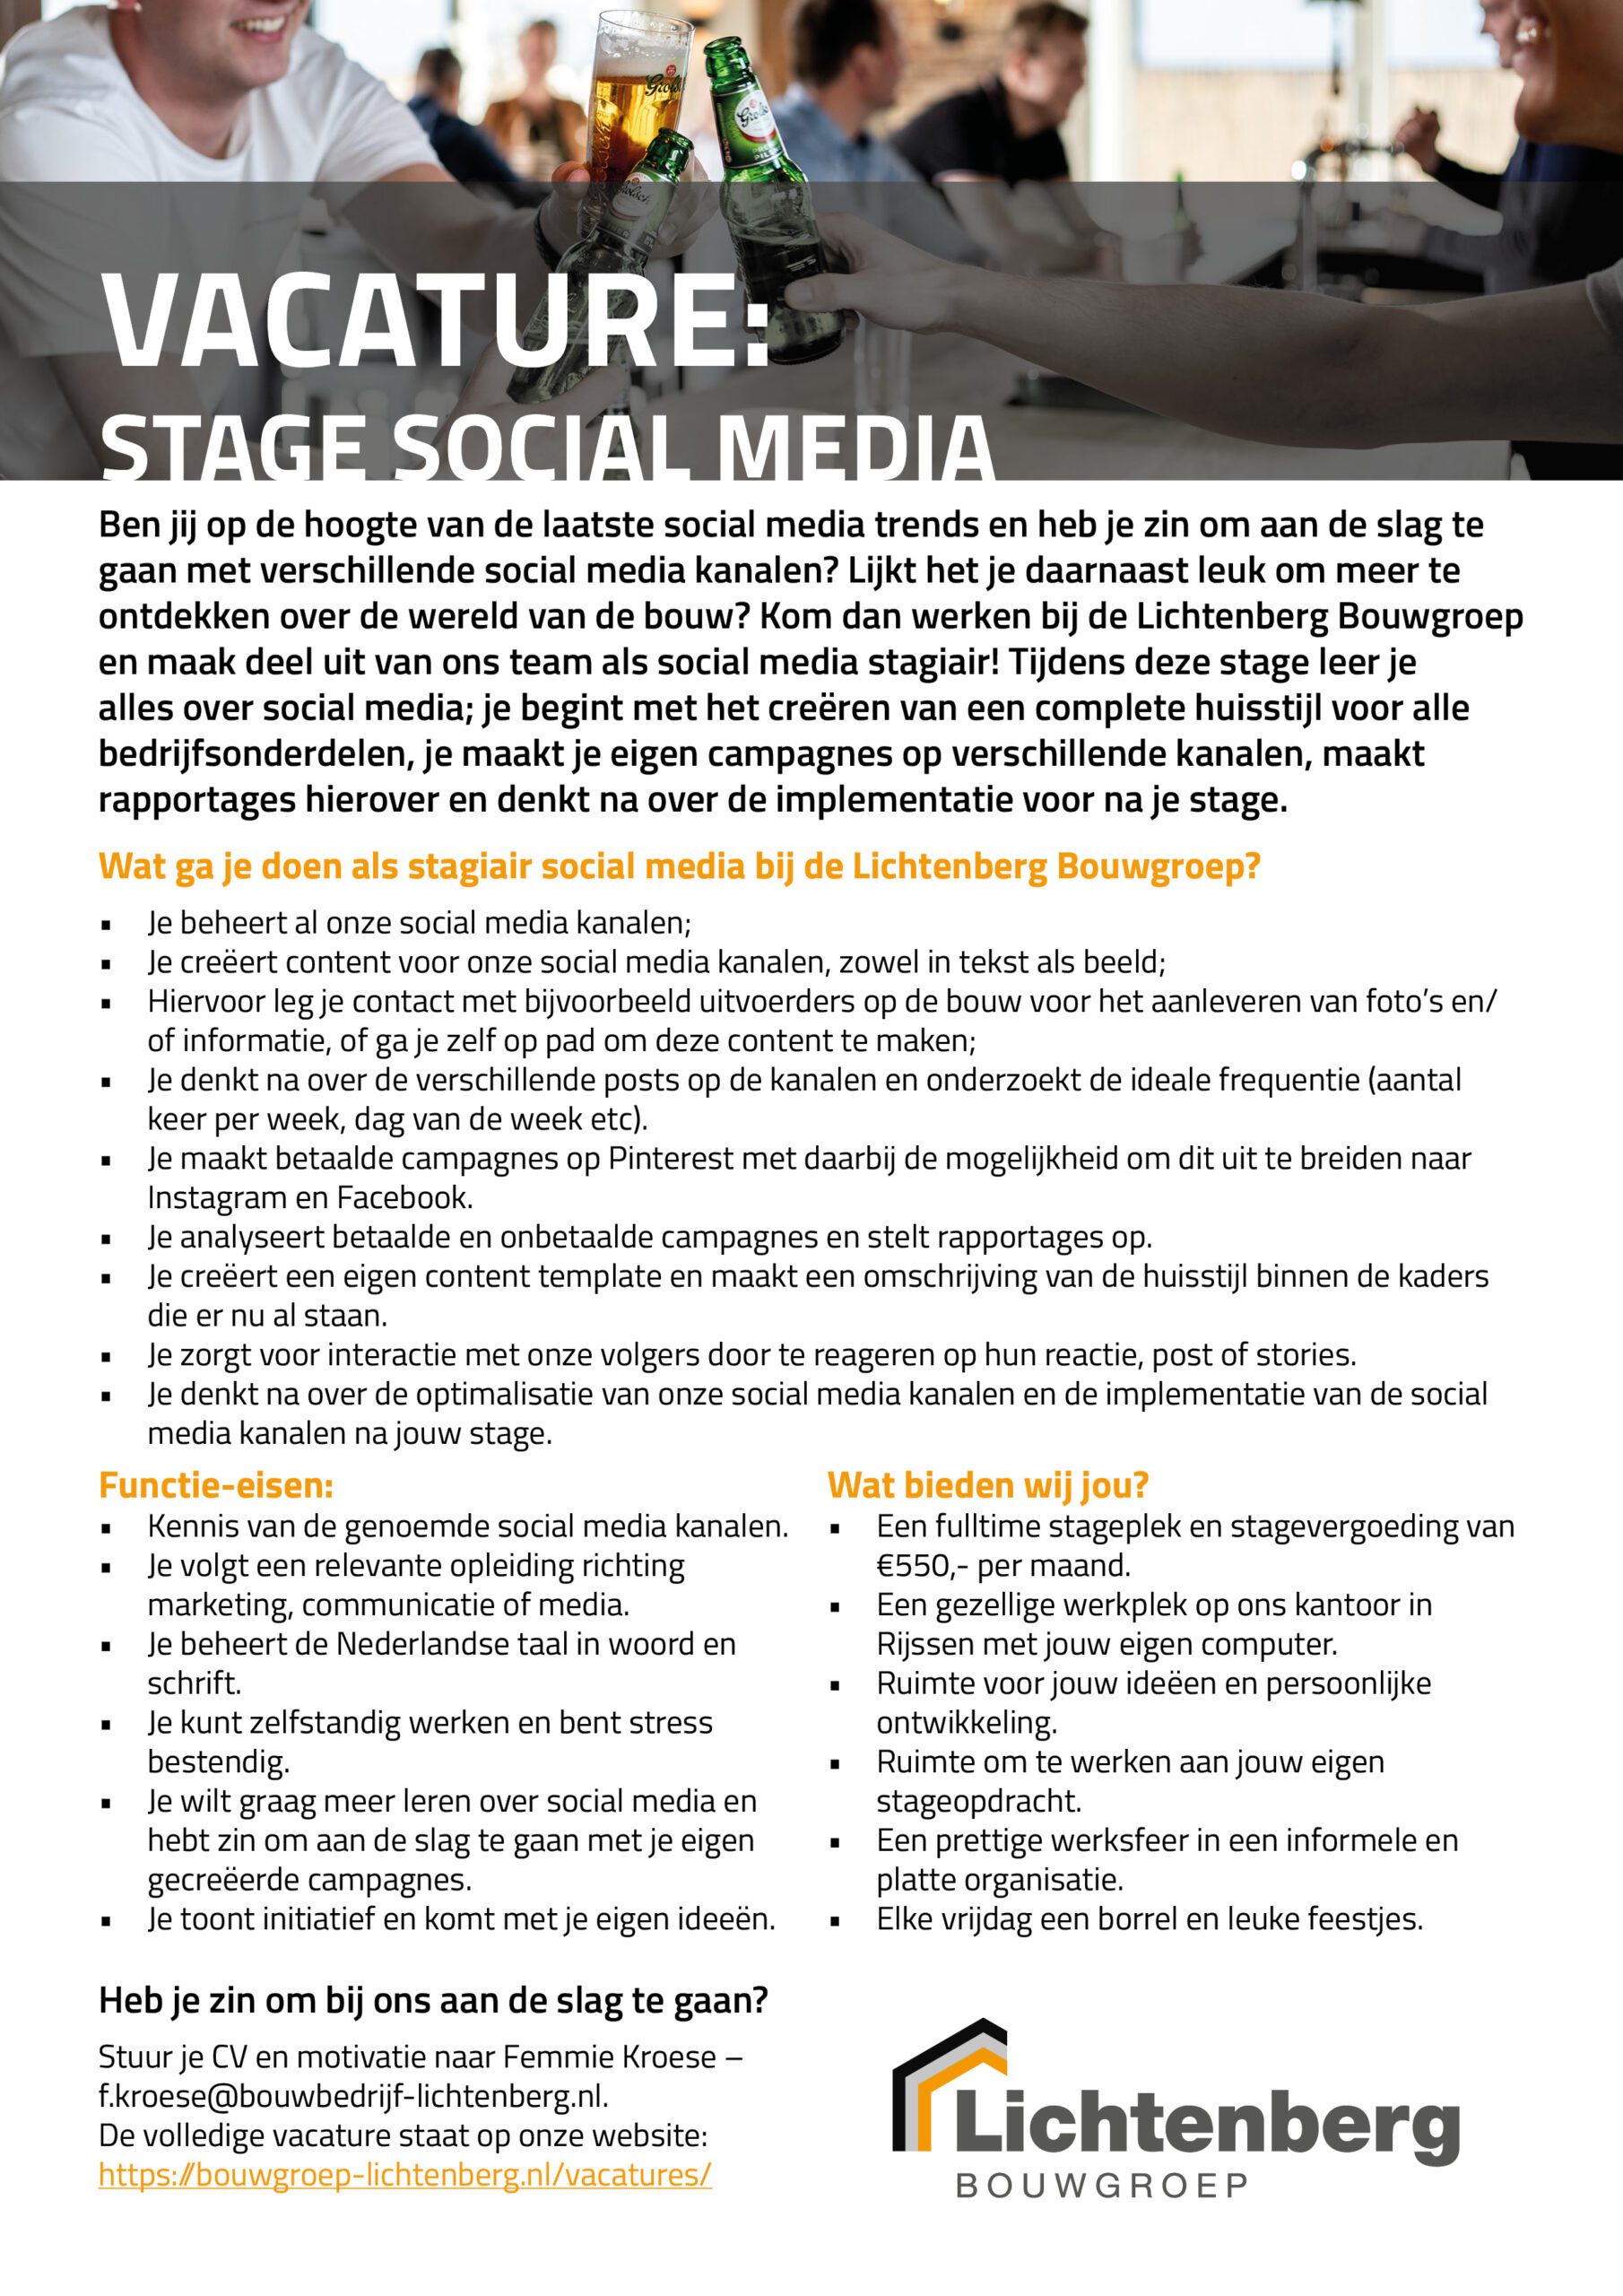 Vacature Lichtenberg Bouwgroep - Stage social media